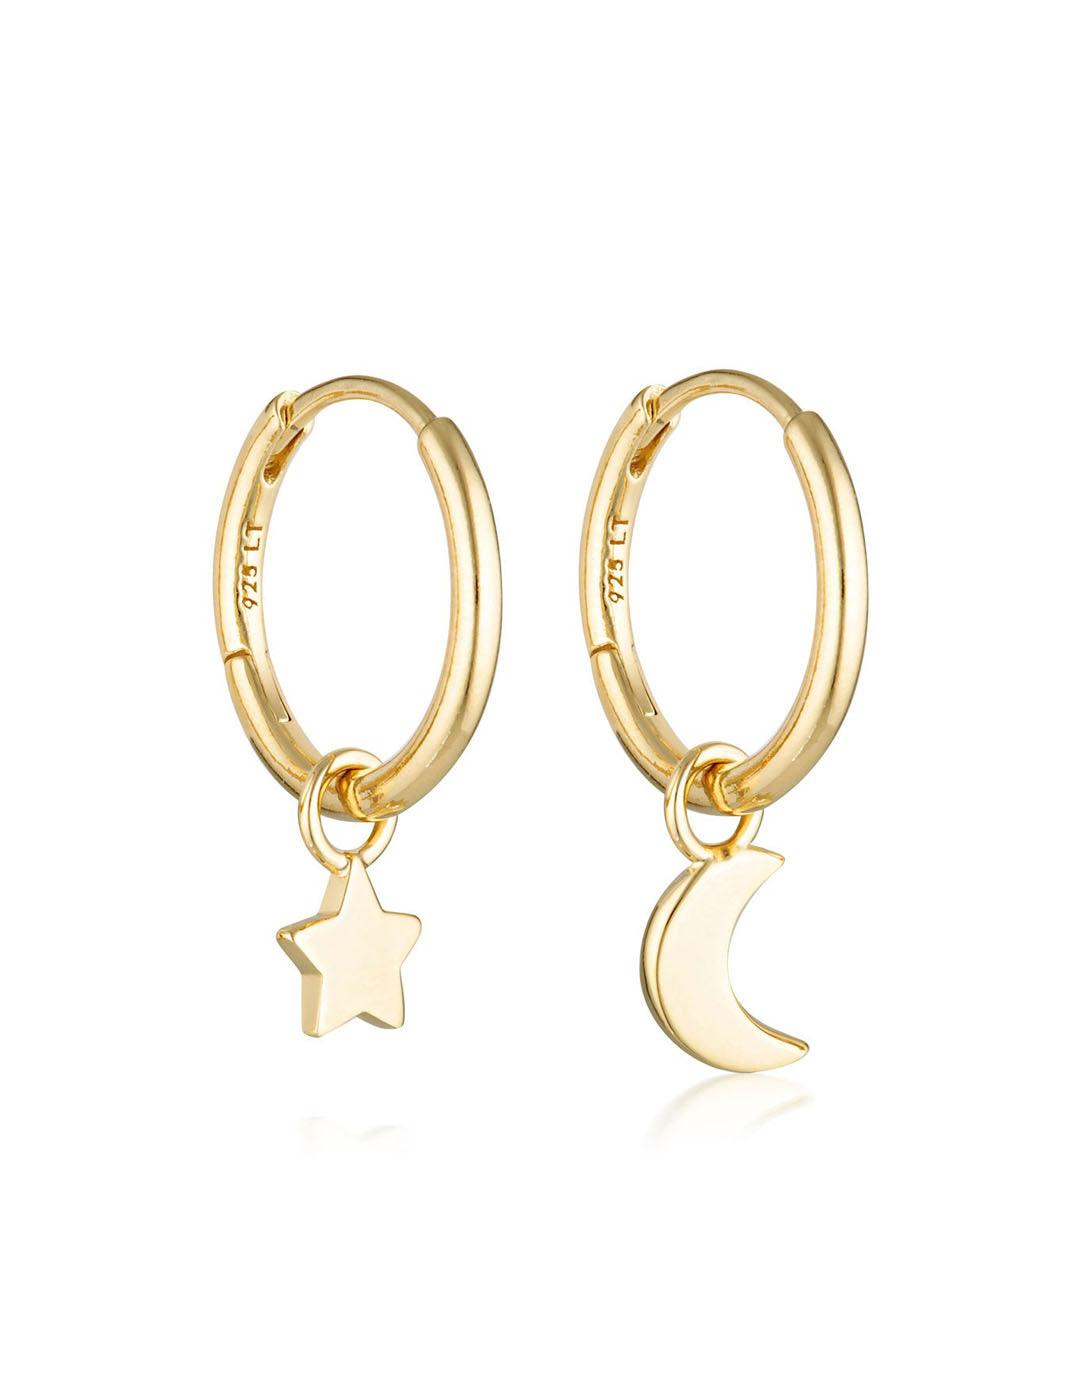 Linda Tahija Jewellery - Star & Moon Huggie Hoop Earrings - Gold Plated - White & Co Living Accessories